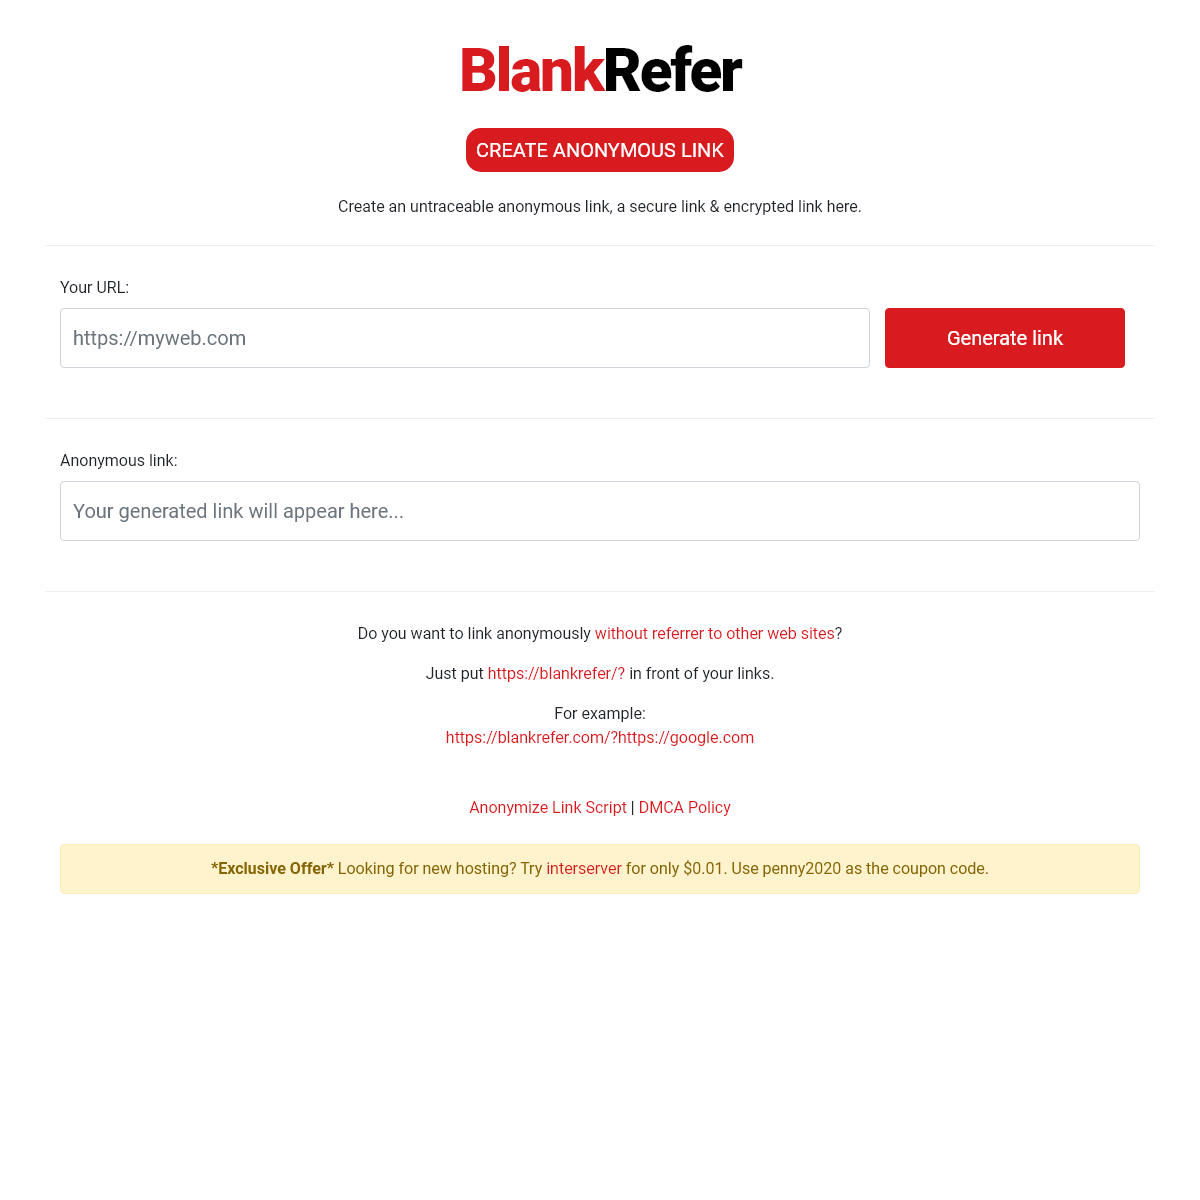 A complete backup of blankrefer.com